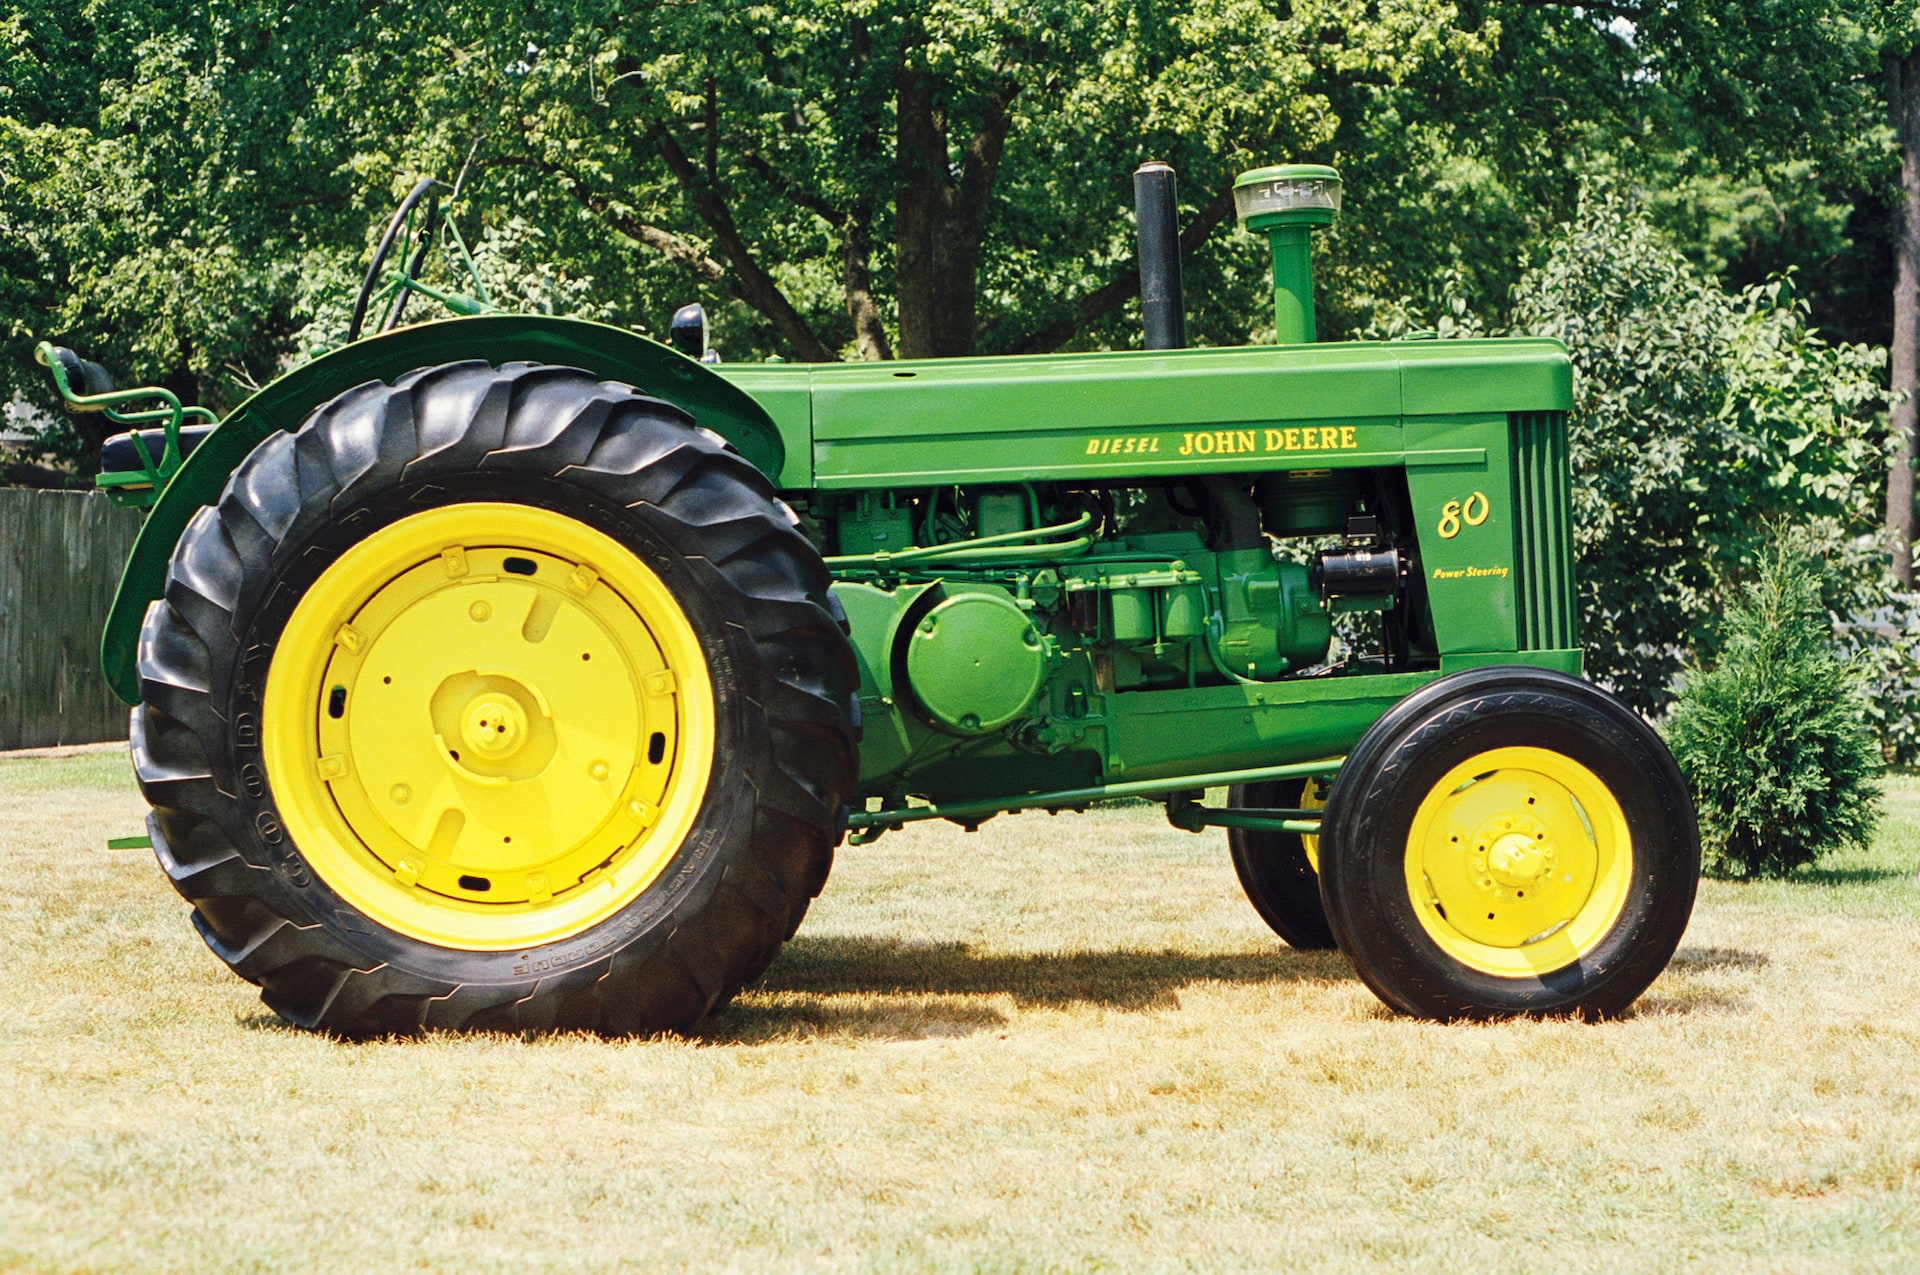 John Deere: Pioneering Tractors since When?